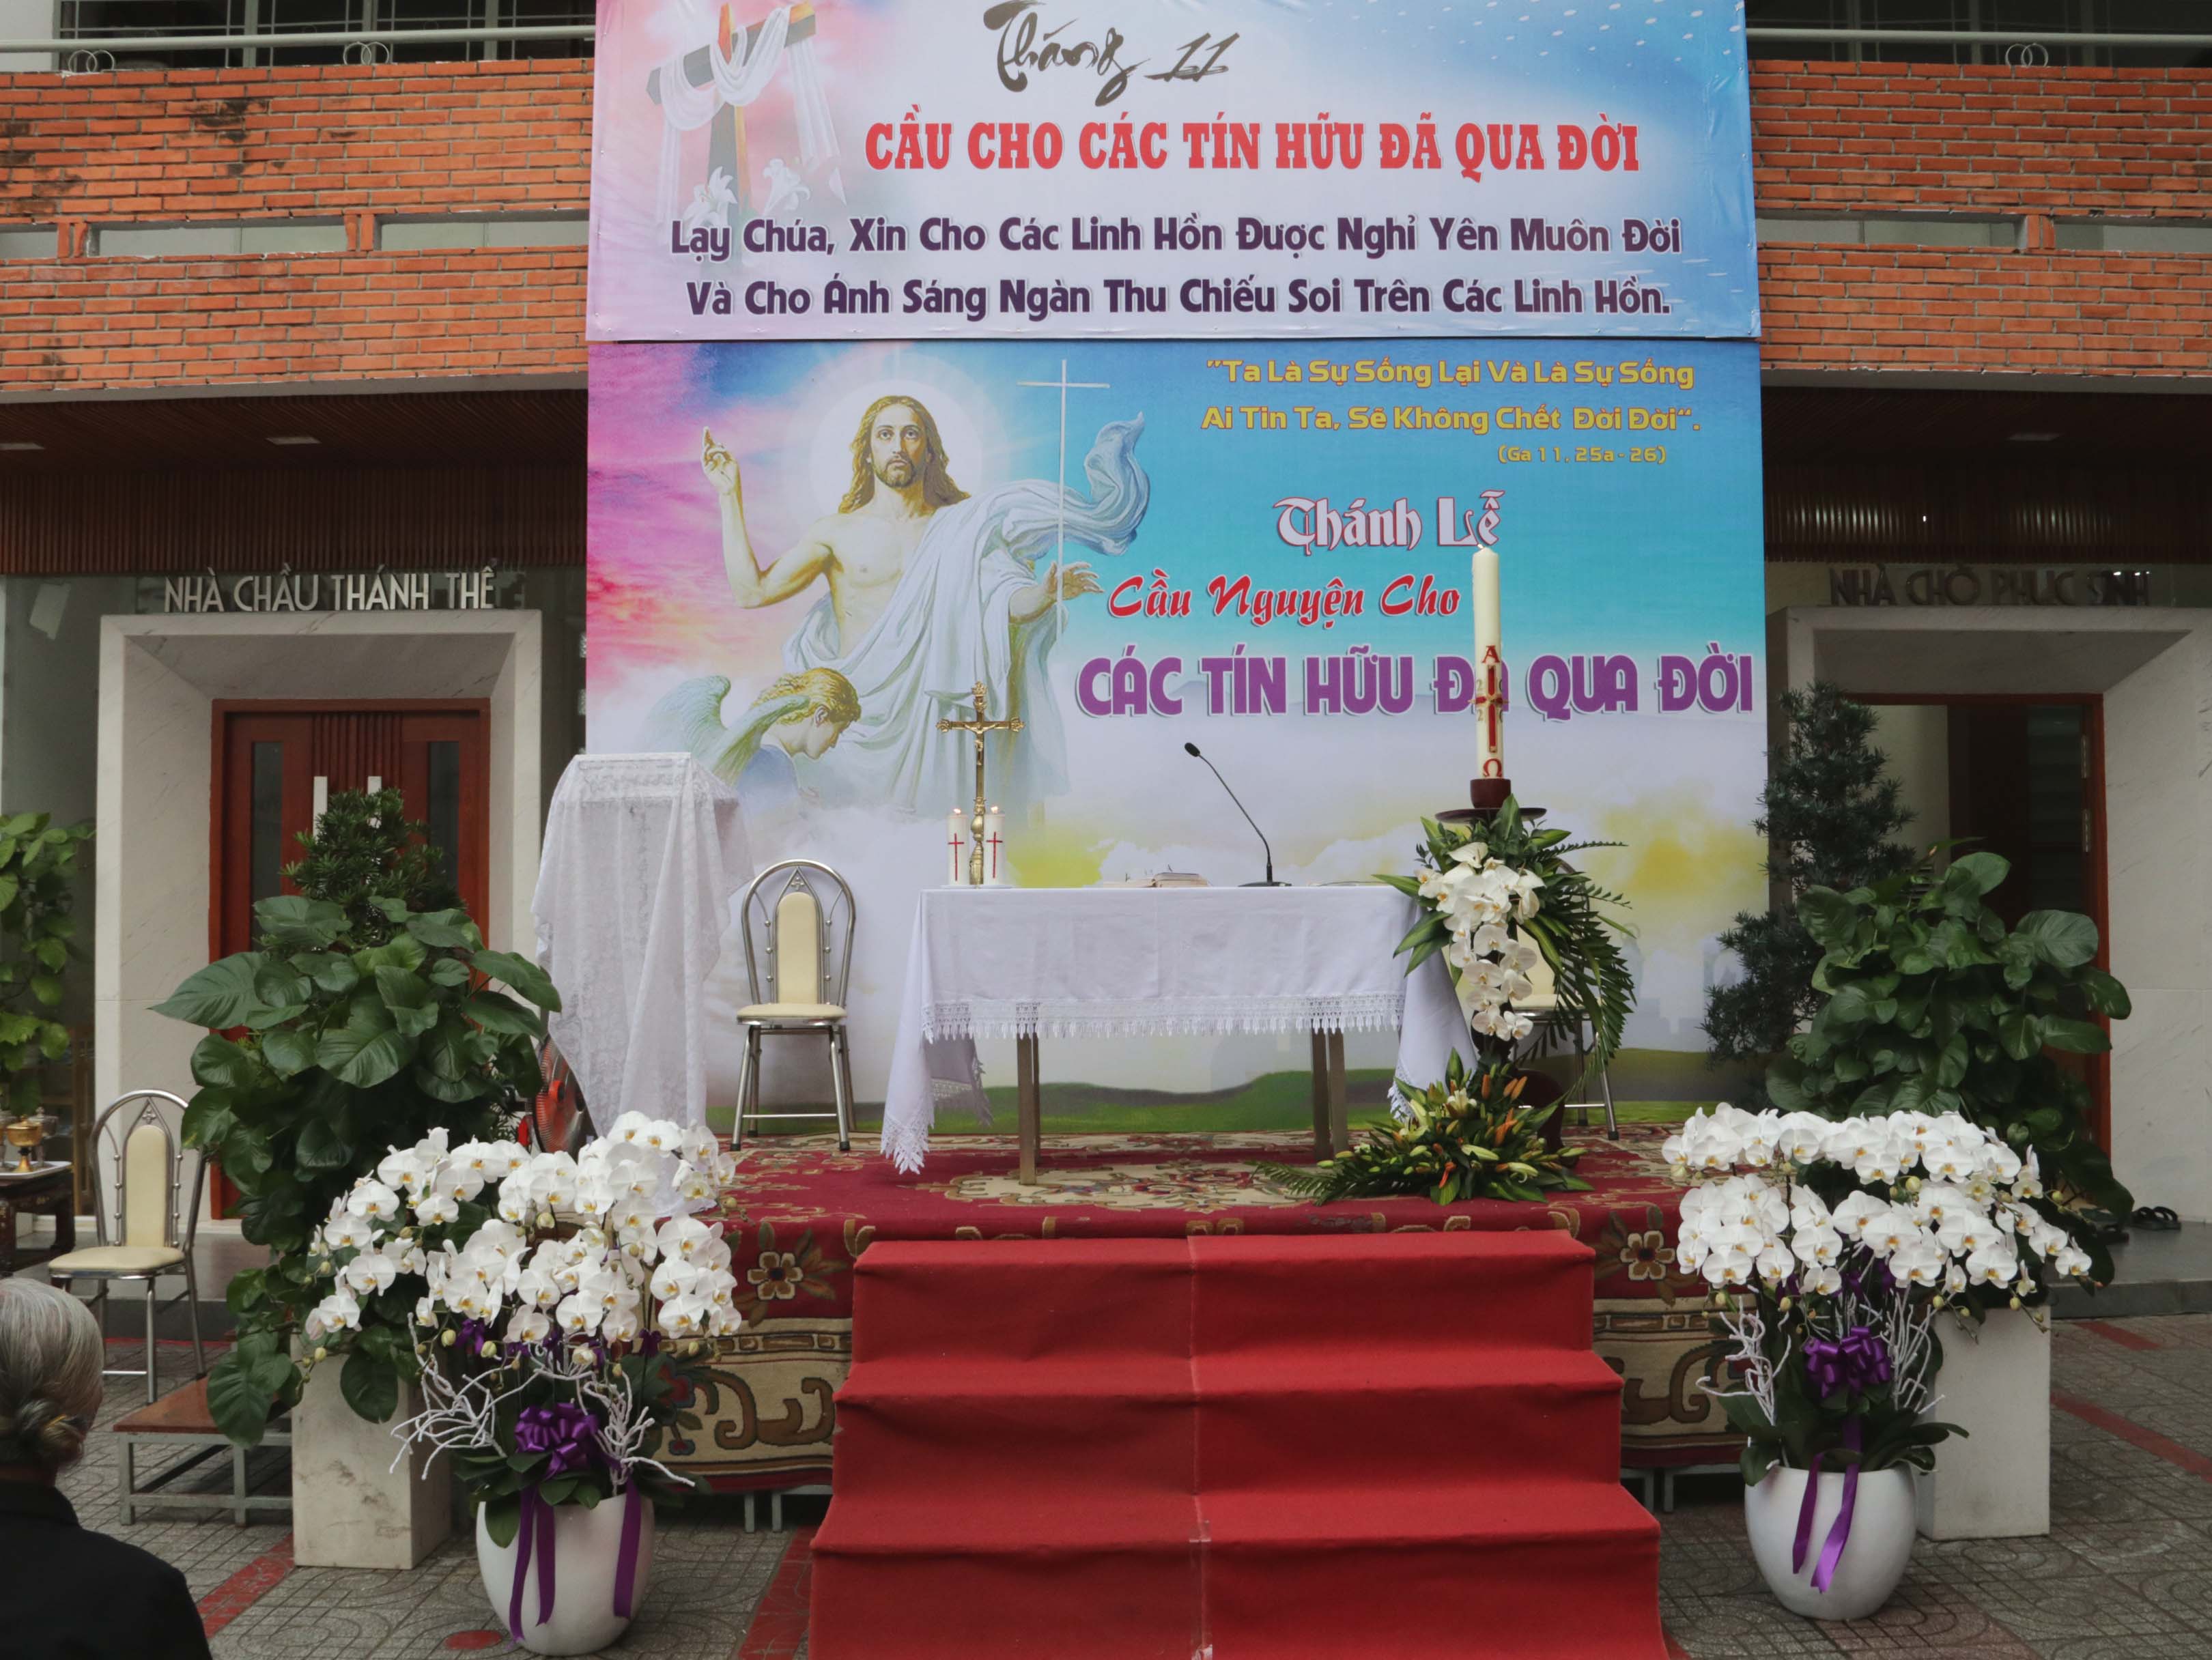 TGP.Sài Gòn - Giáo xứ Tân Việt: Thánh lễ cầu cho các linh hồn ngày 2-11-2020